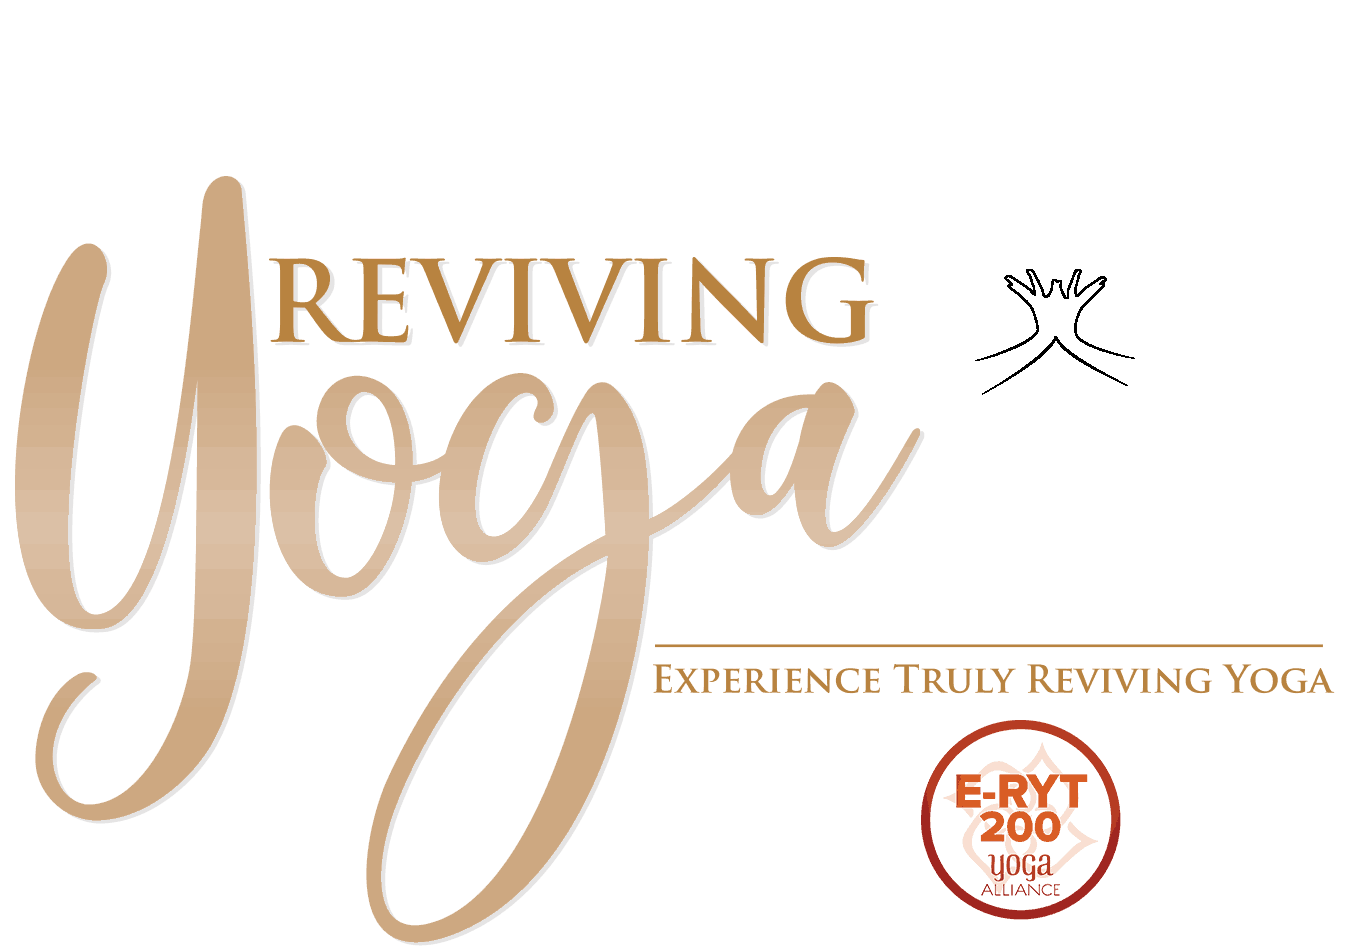 Start - Reviving Yoga